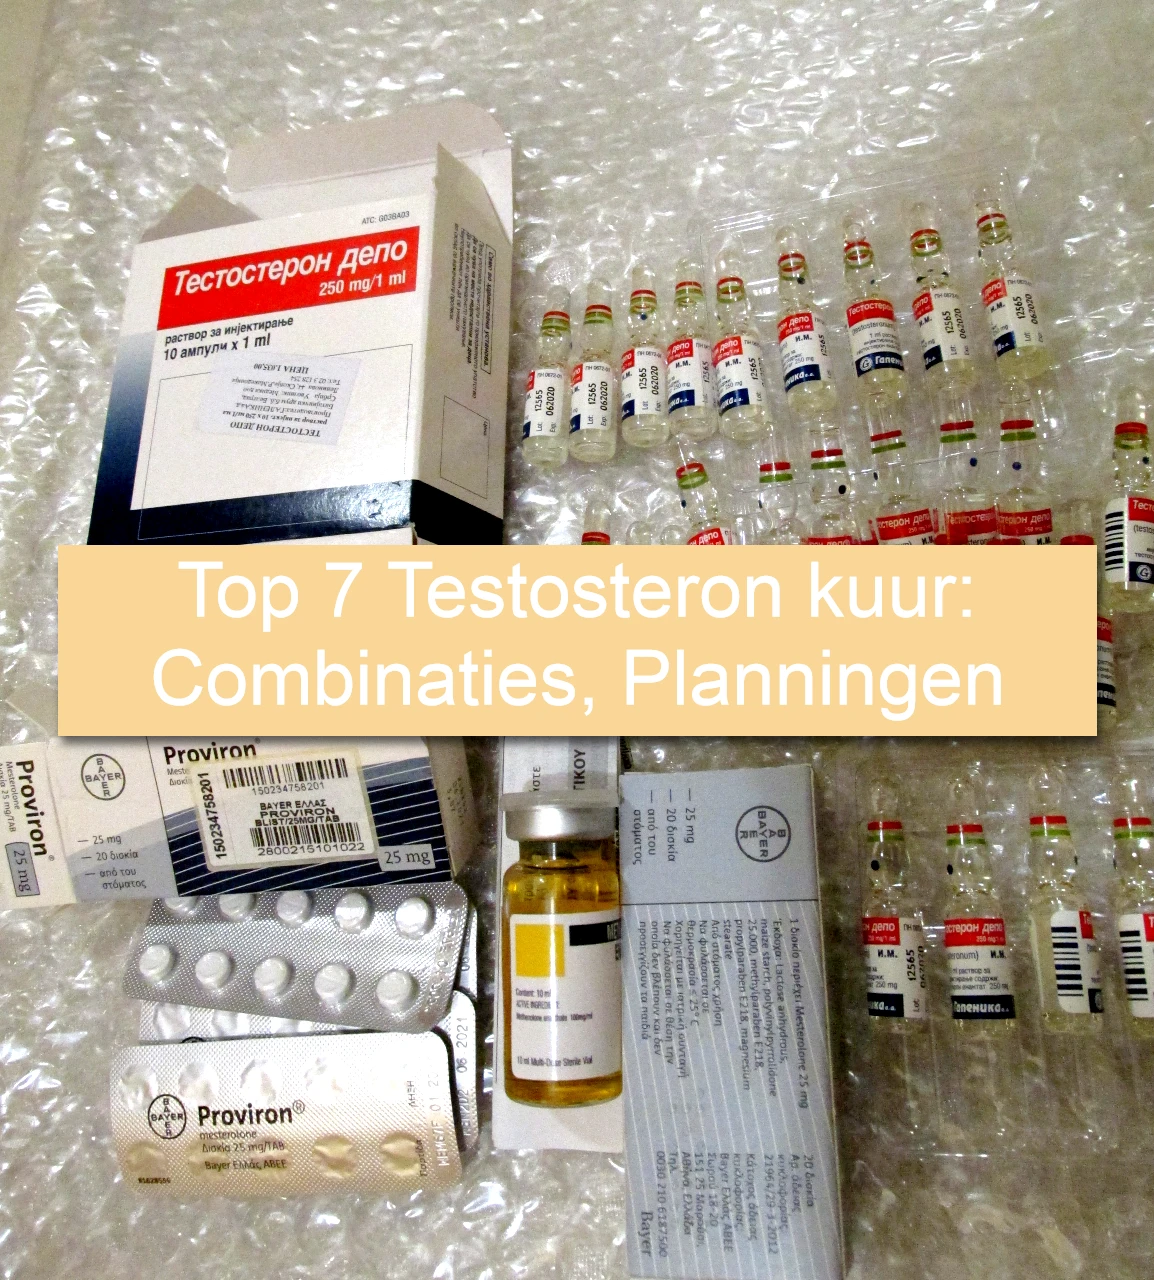 Top 7 Testosteron kuur Combinaties, Planningen